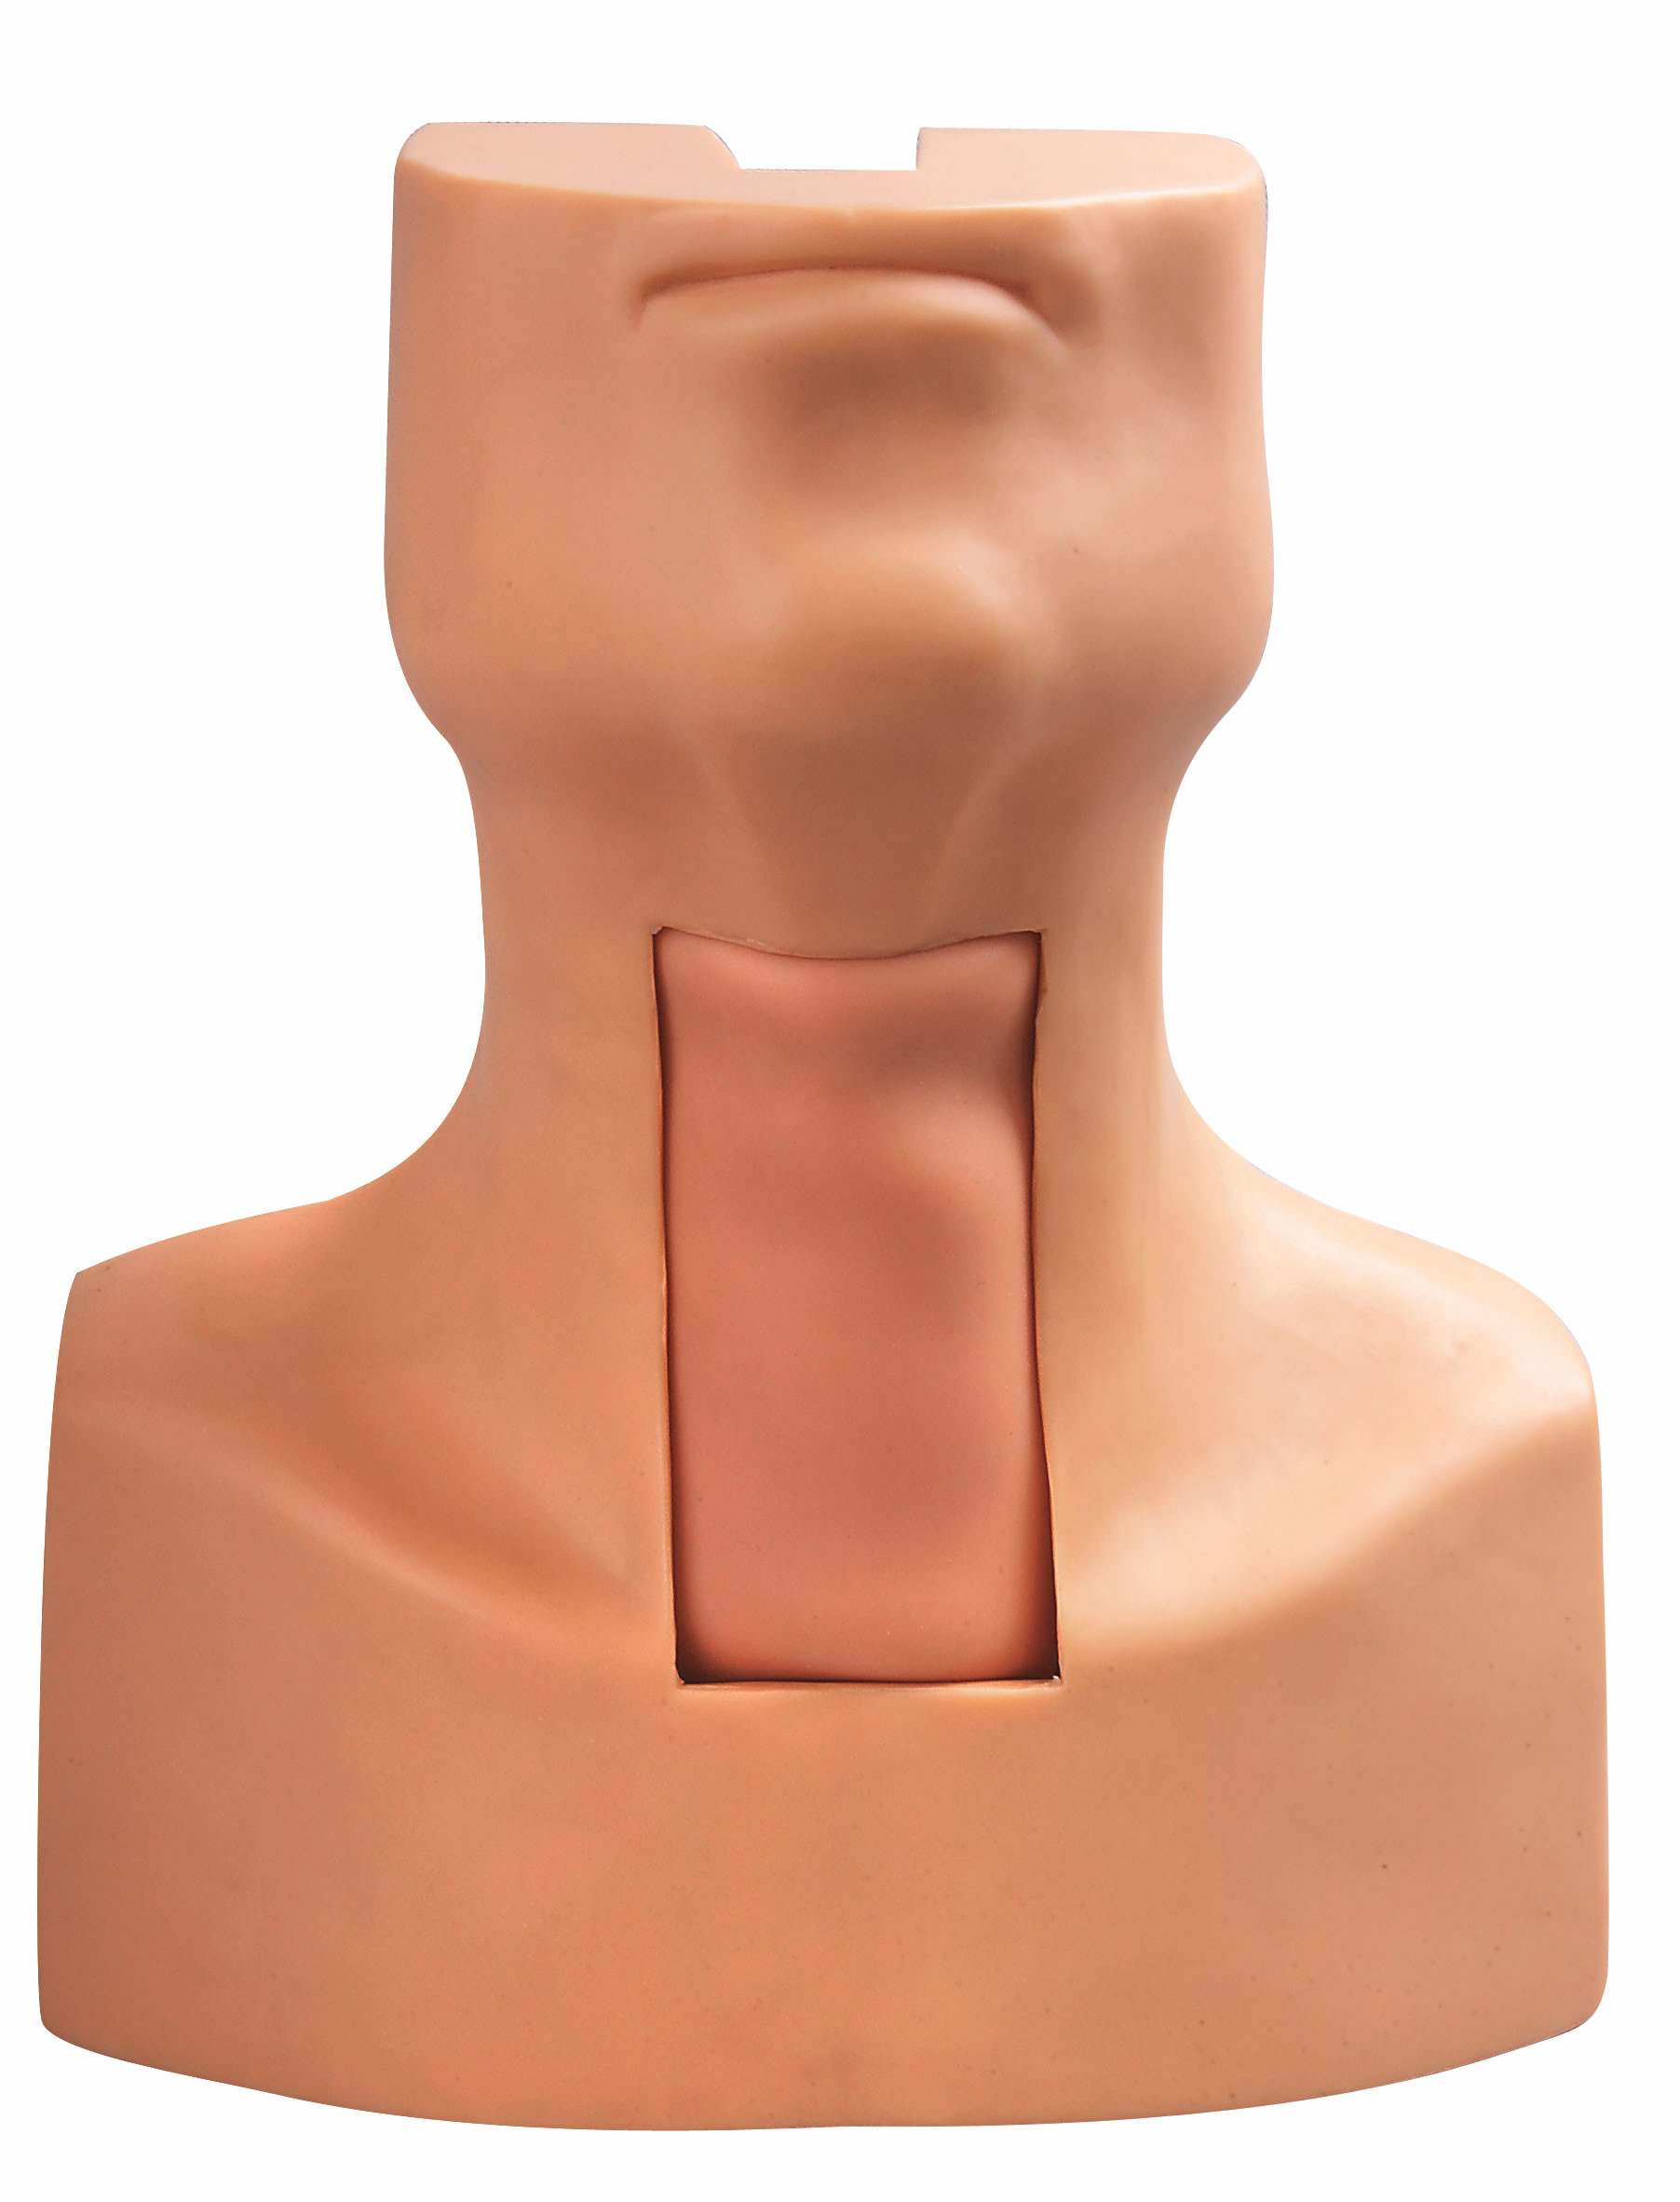 Tracheostomy-Durchbohren-Intubations-Modell mit simulierter Trachea-und Hals-Haut für die Ausbildung